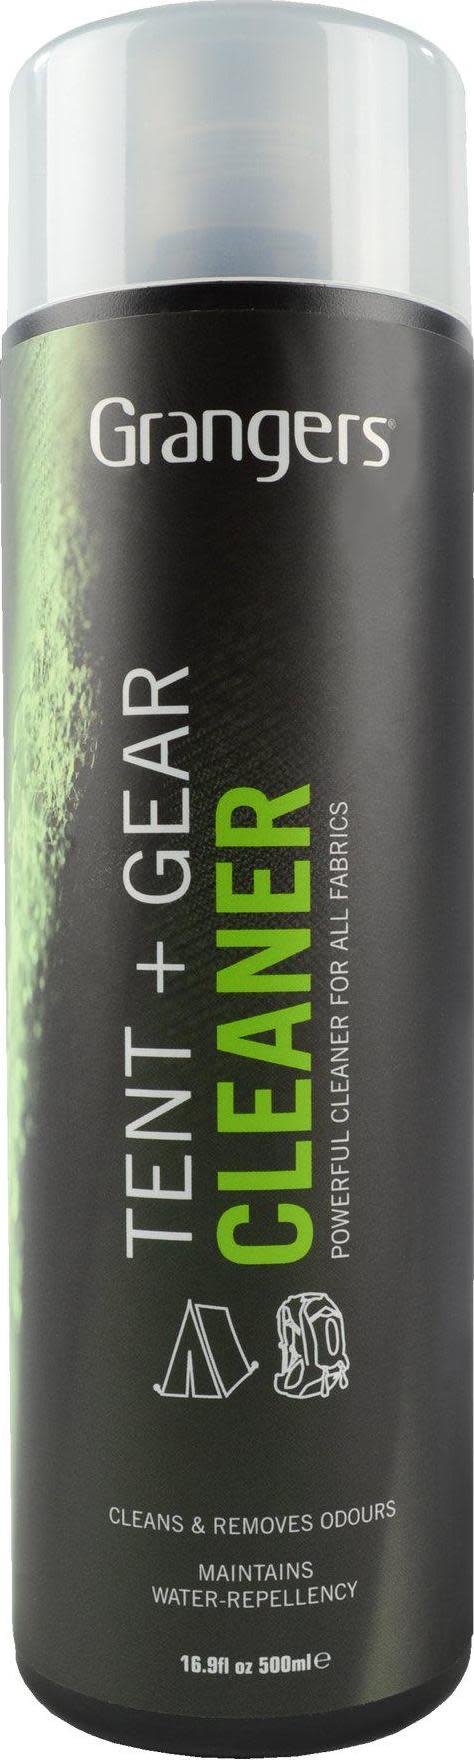 Grangers Tent + Gear Cleaner Nocolour